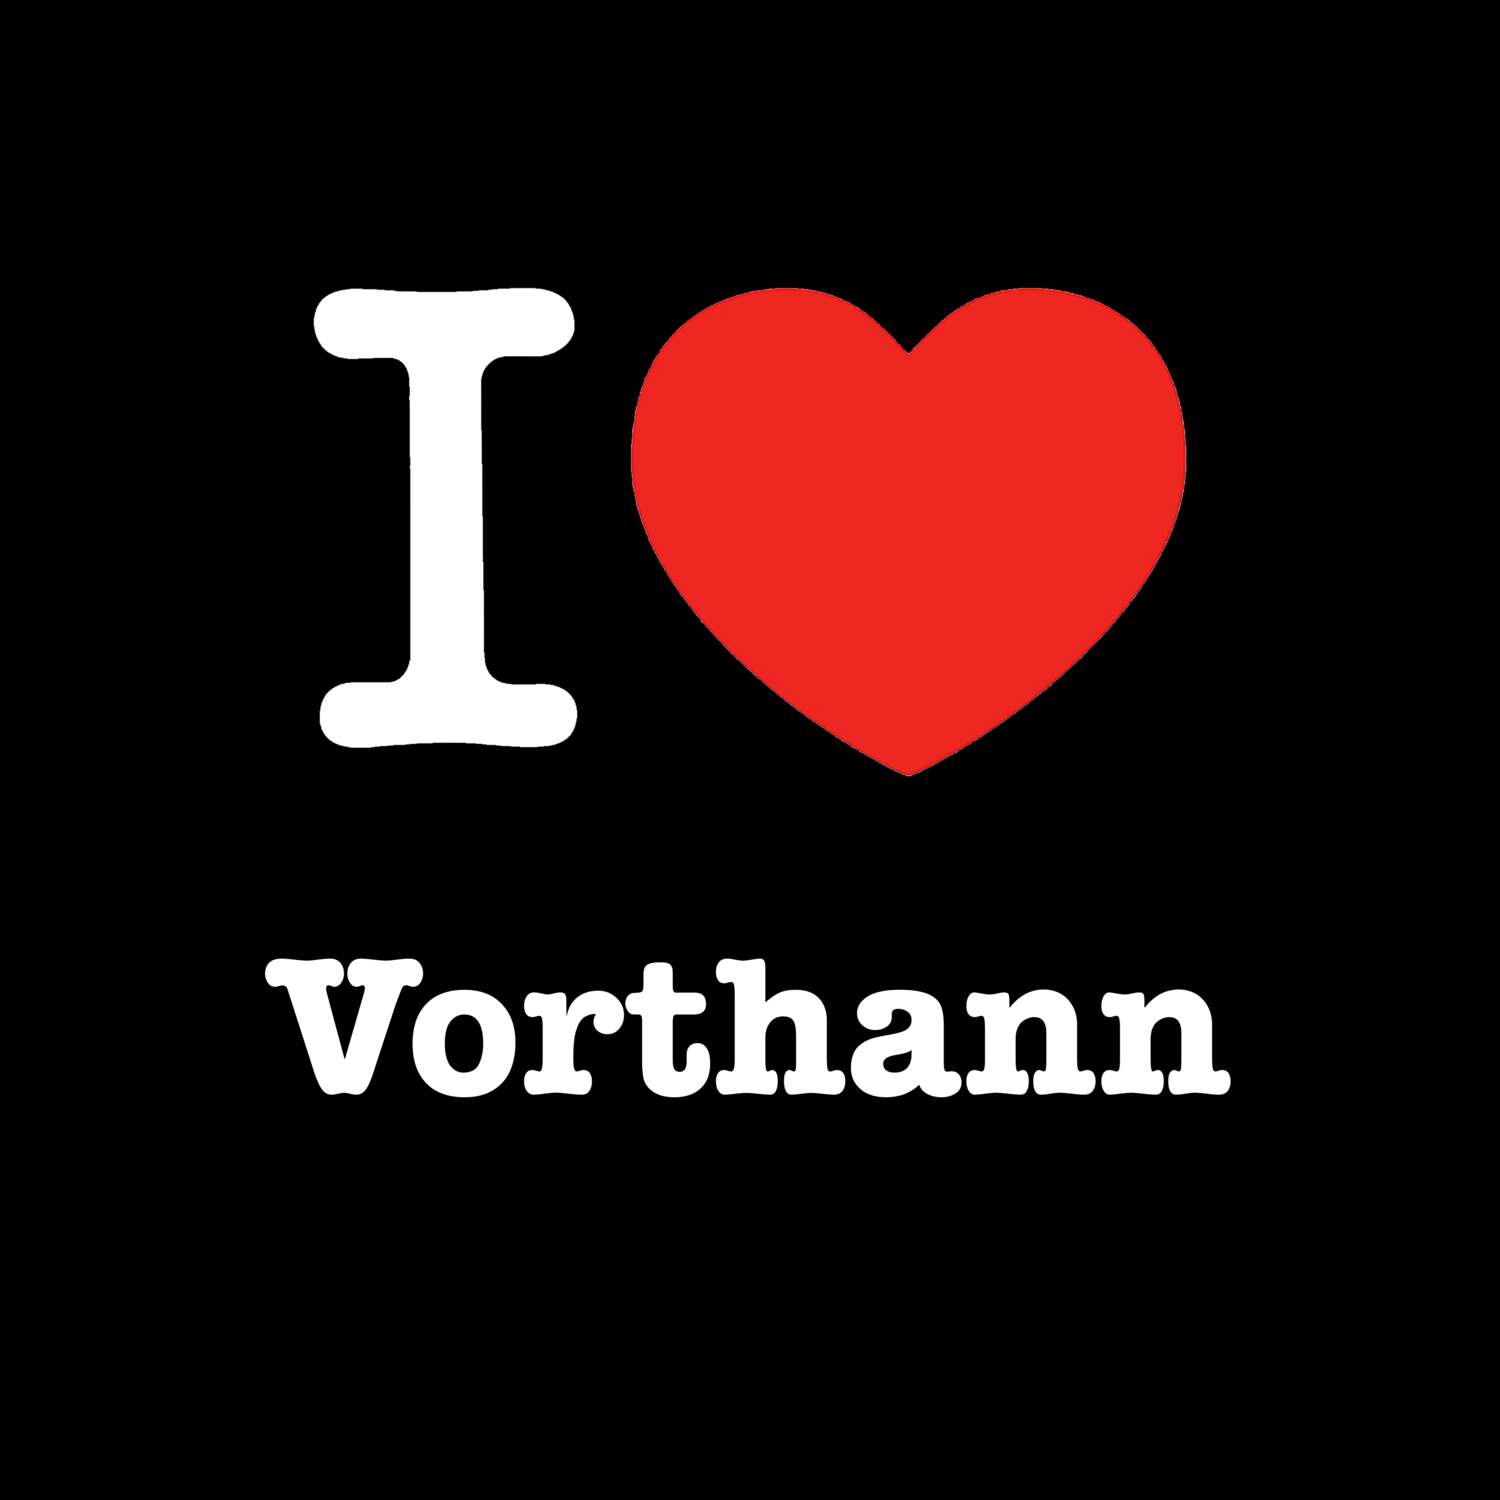 Vorthann T-Shirt »I love«